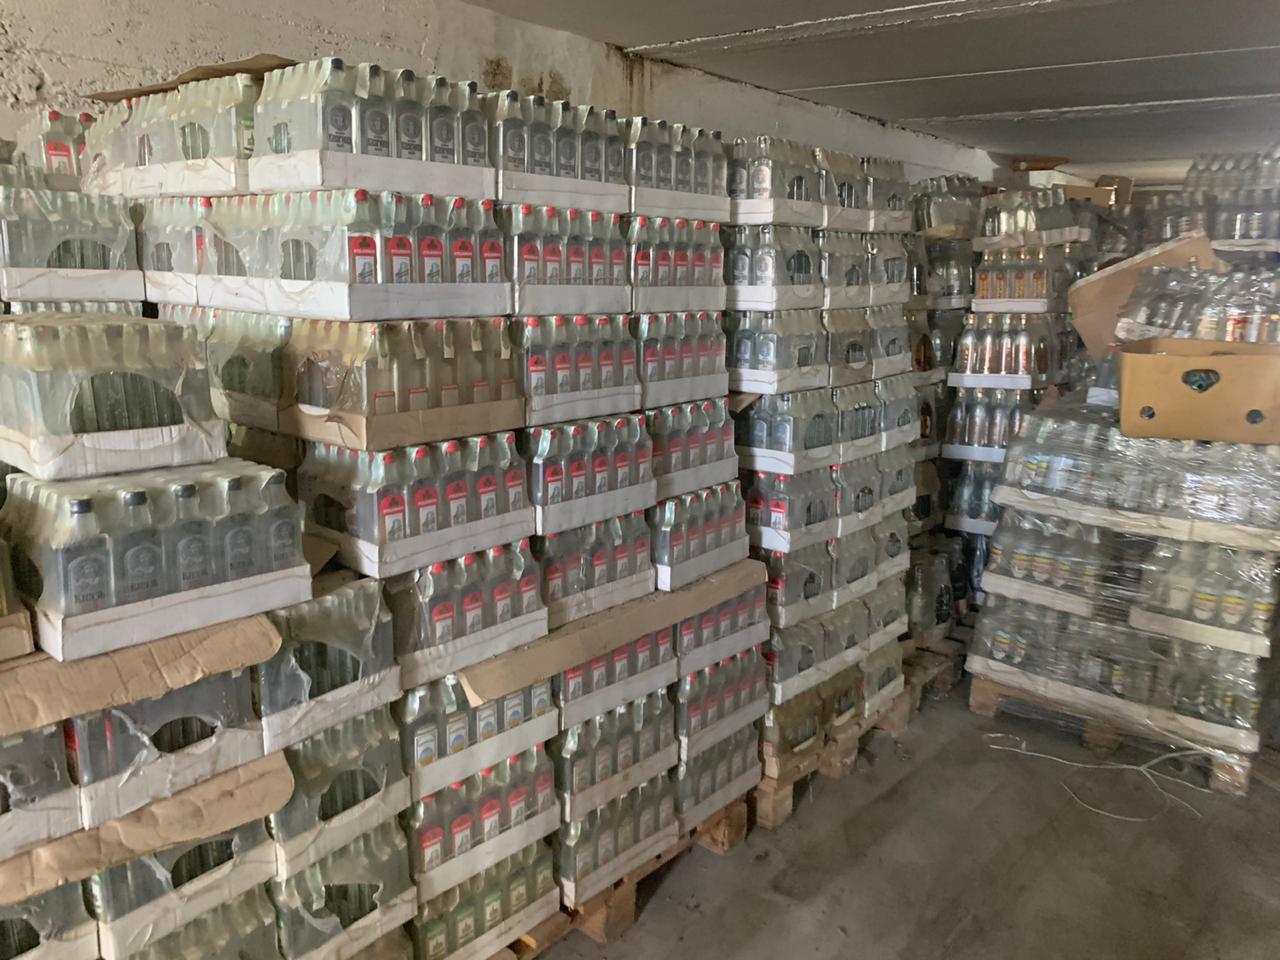 На Львівщині відбулася найбільша утилізація алкоголю — вилили 37 тисяч пляшок